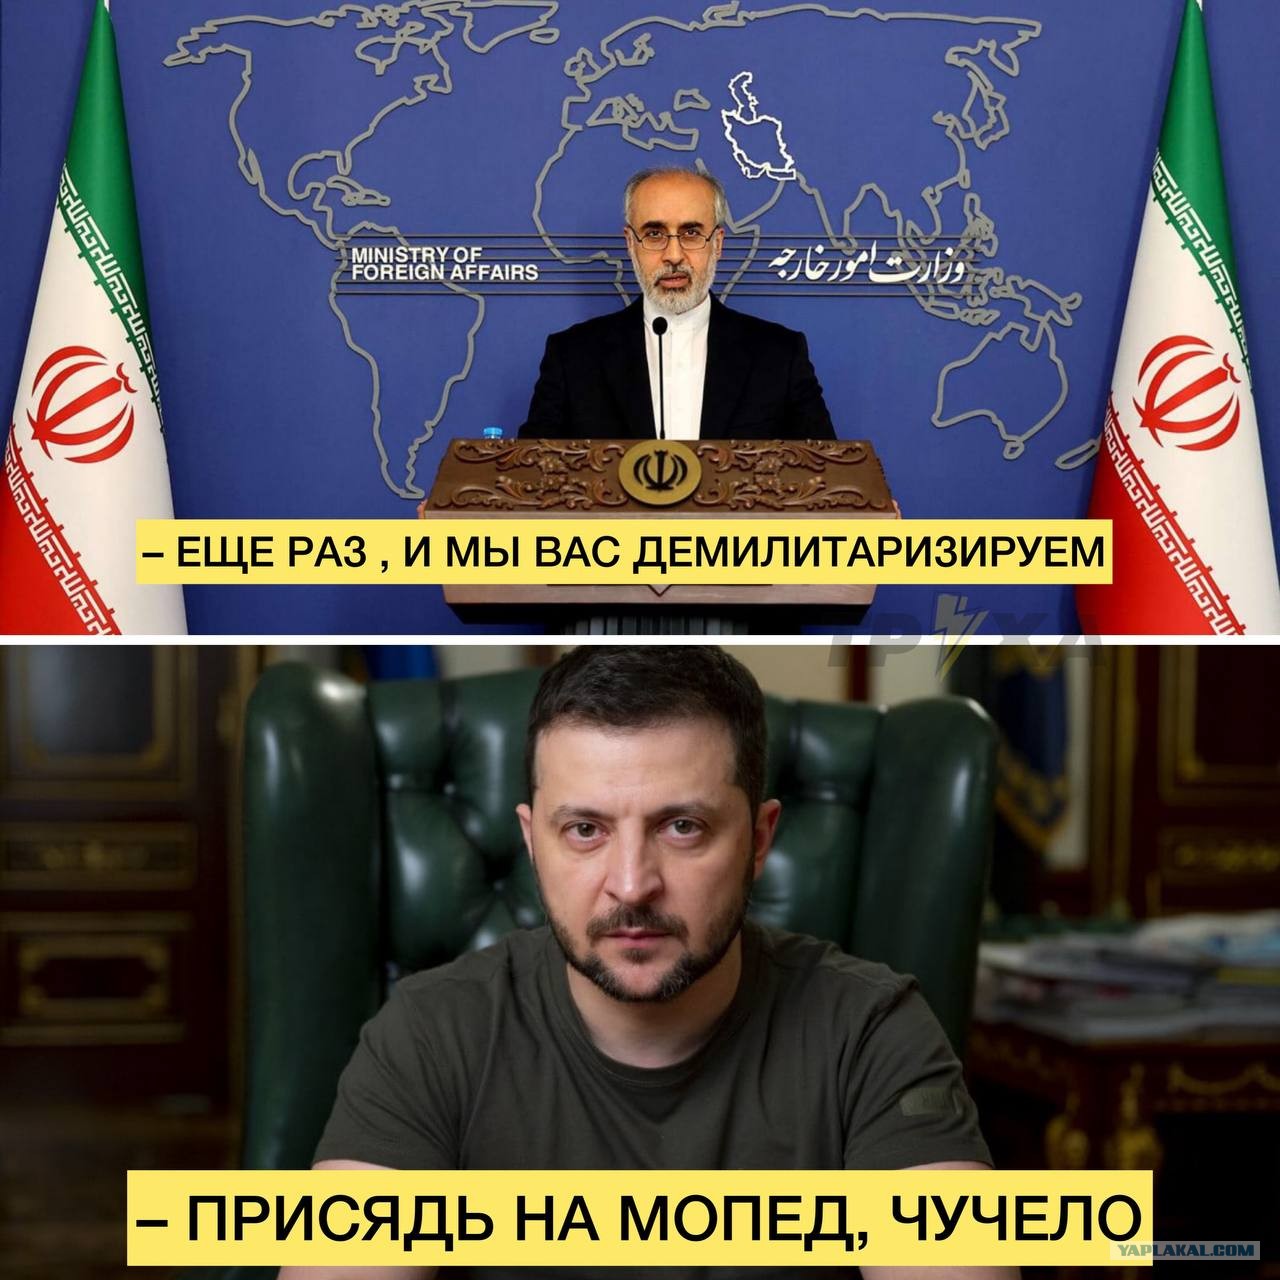 Обвинили безосновательно. Иран угрожает Зеленскому. МИД Ирана ответил на угрозы Украины. Иран грозит Украине-фото.